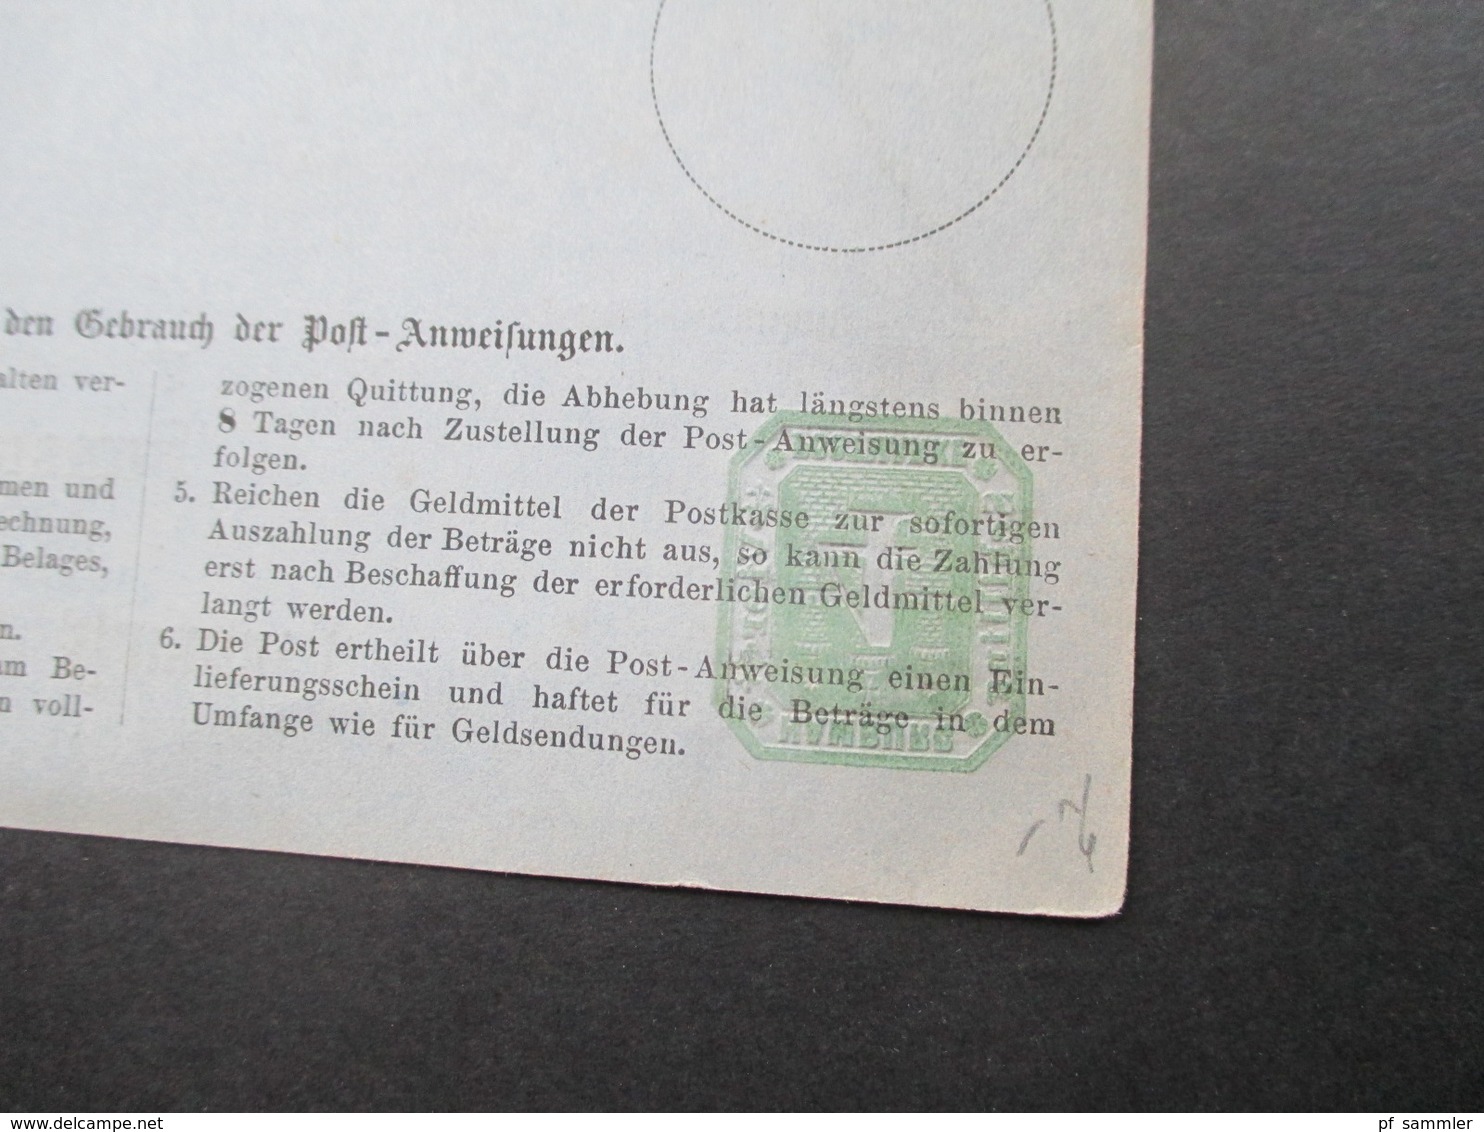 Altdeutschland 1866 Hamburg Postanweisung A 1 und A 2 ungebraucht! Katalogwert zusammen 160€